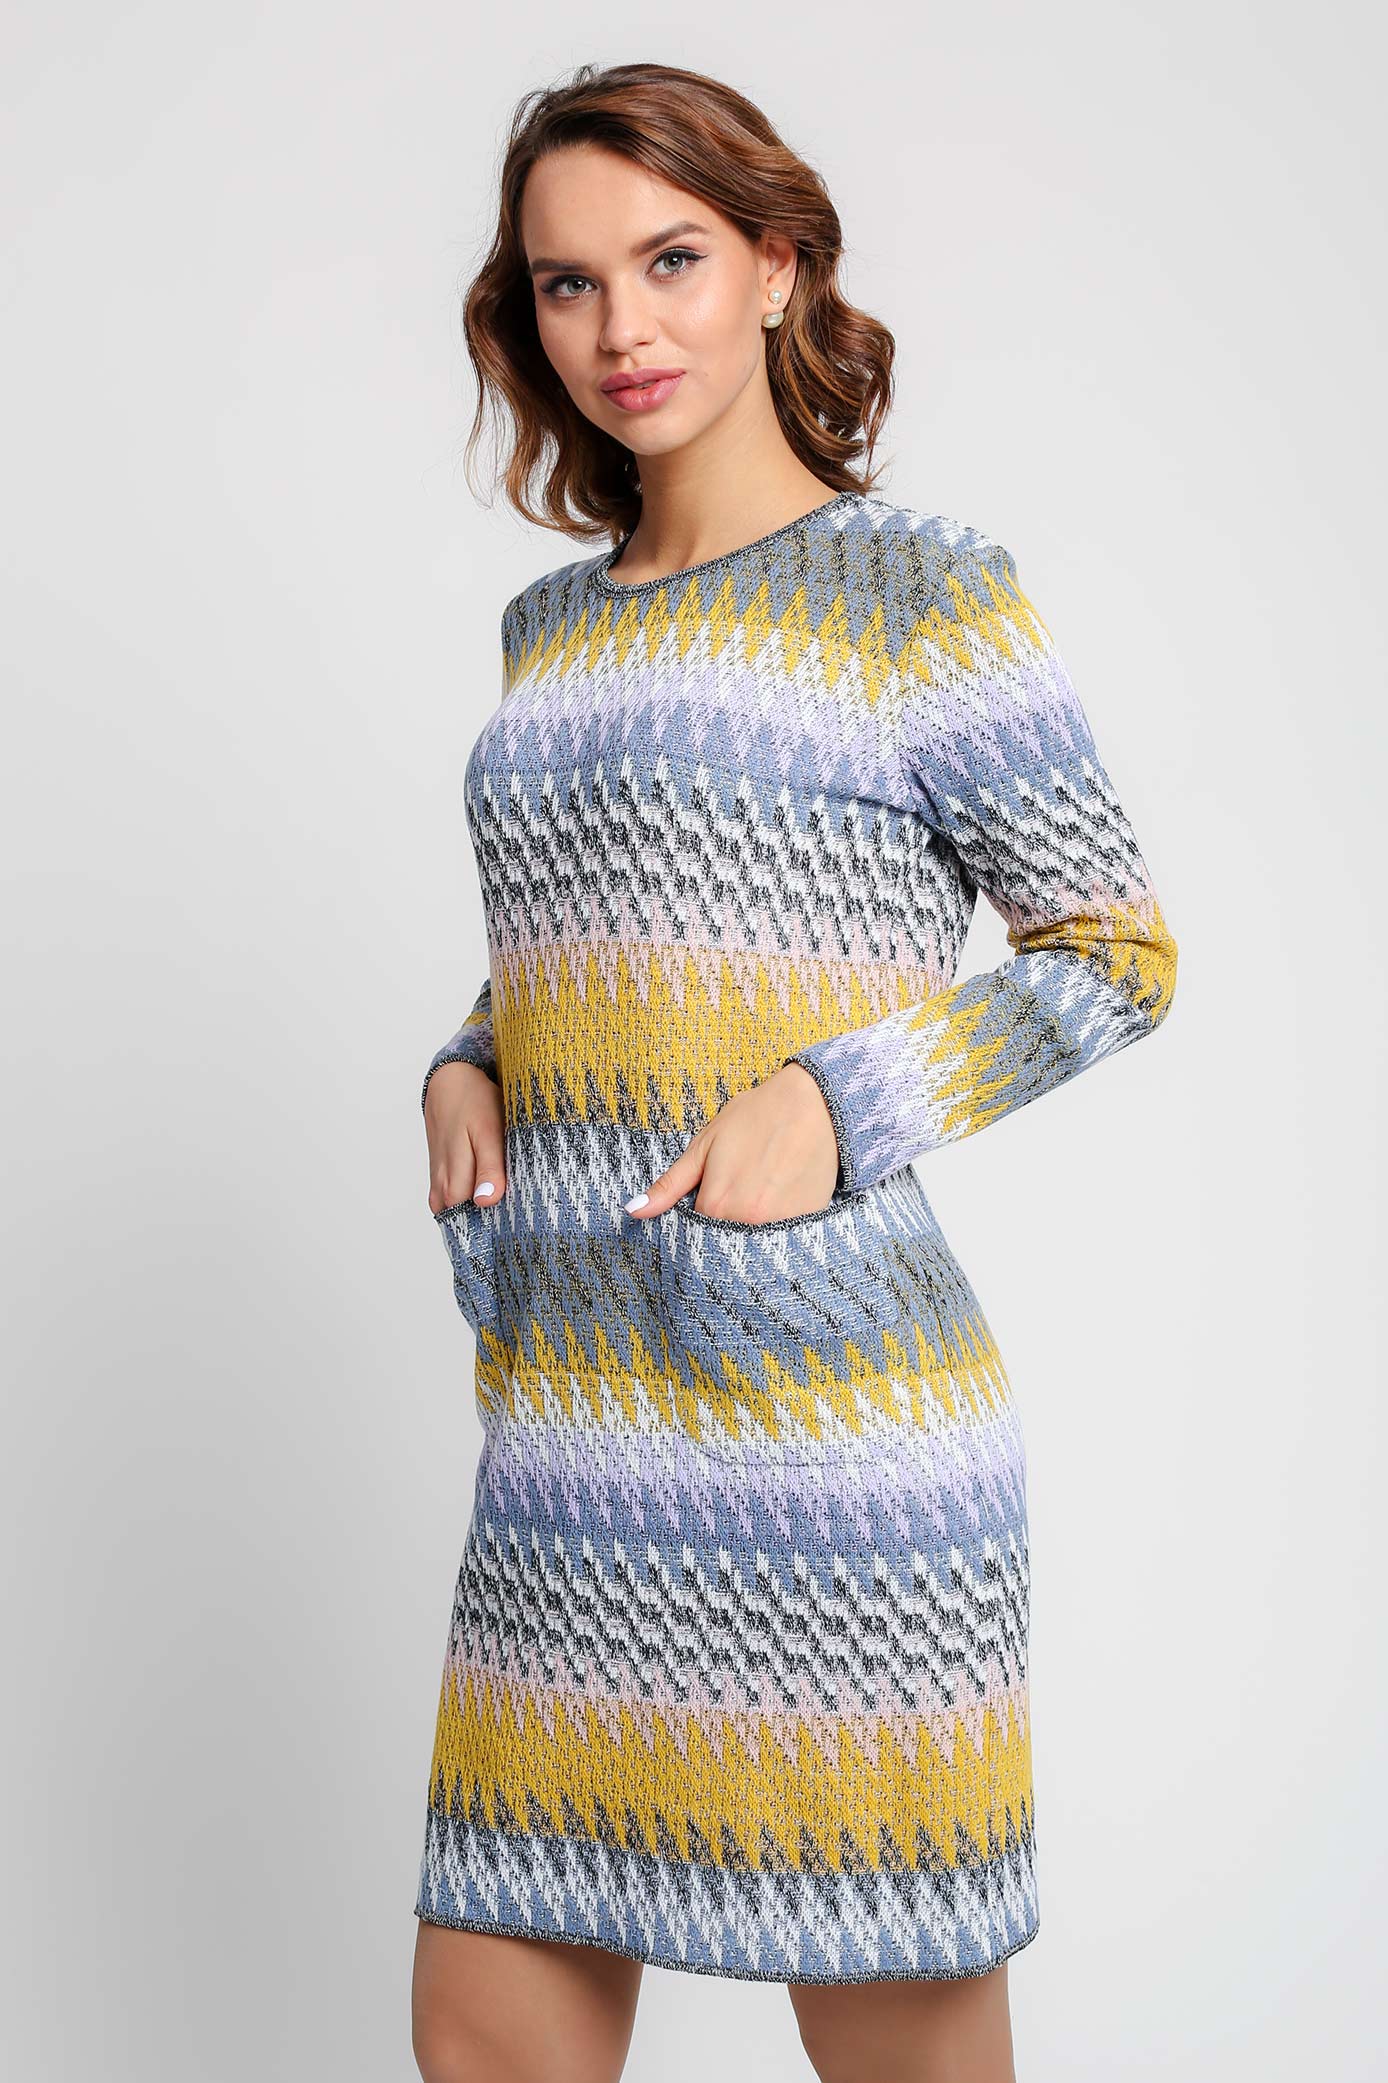 Платье женское Текстильная Мануфактура Д 2964 разноцветное 50 RU